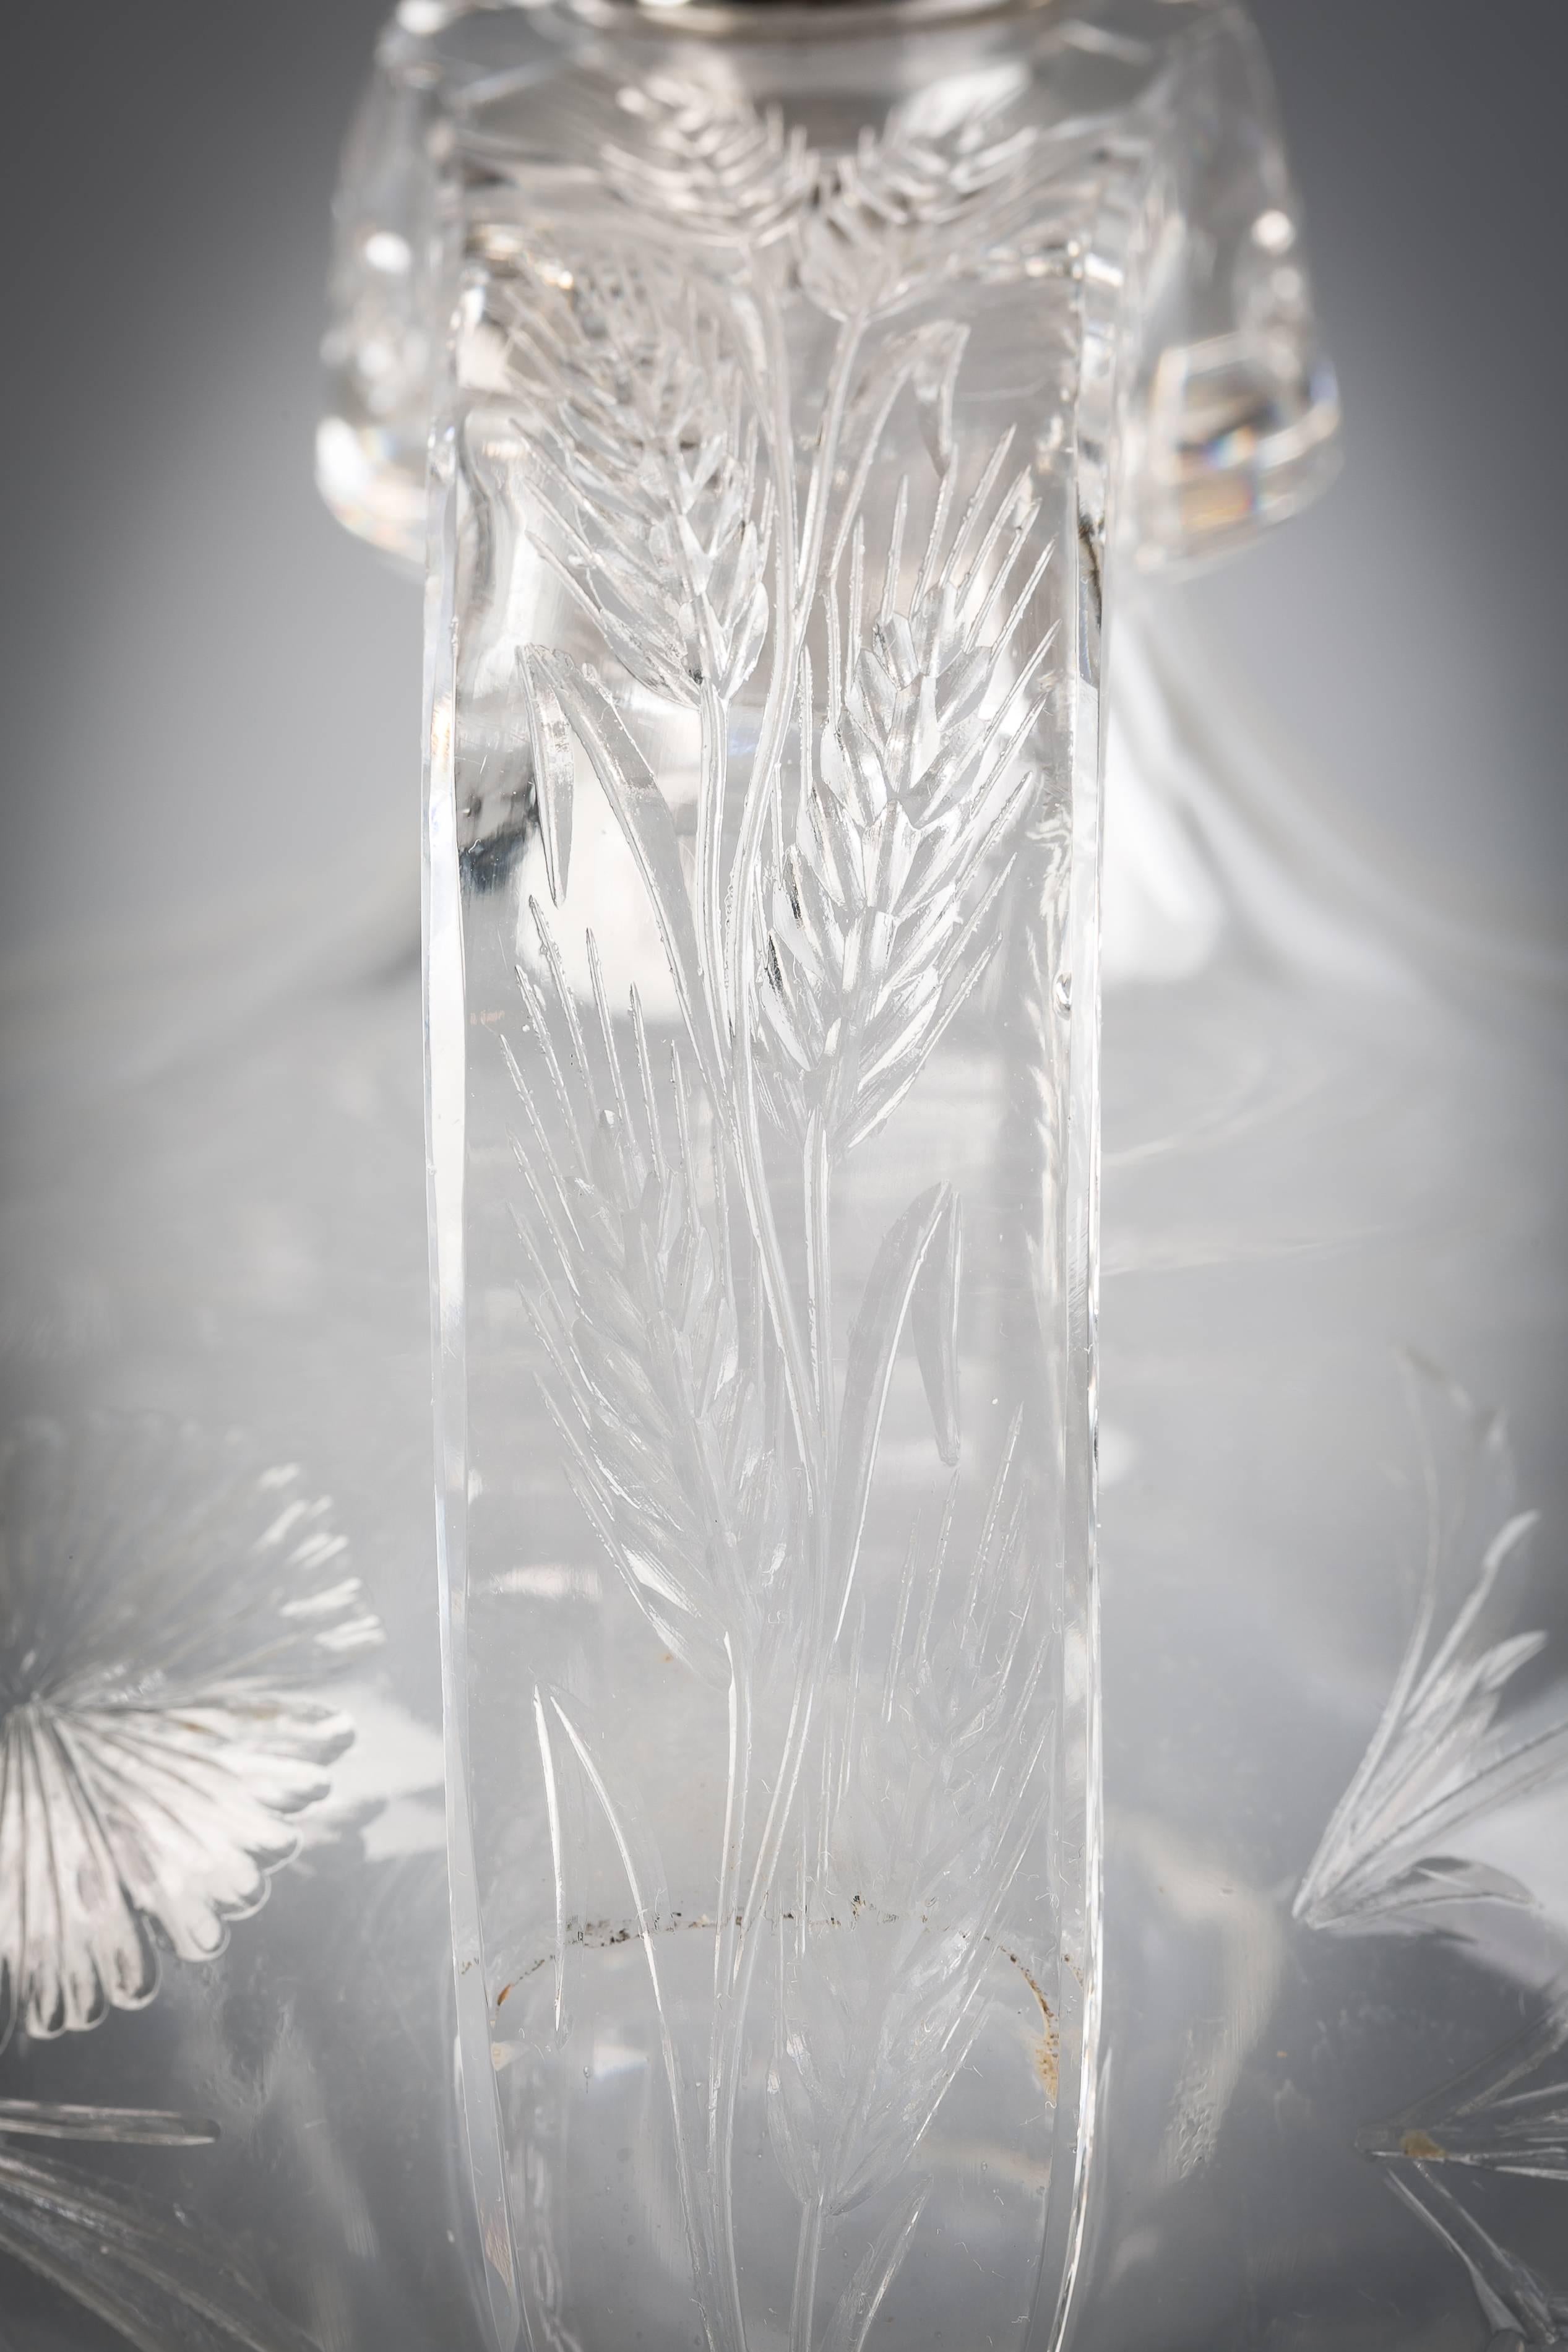 gorham crystal pitcher